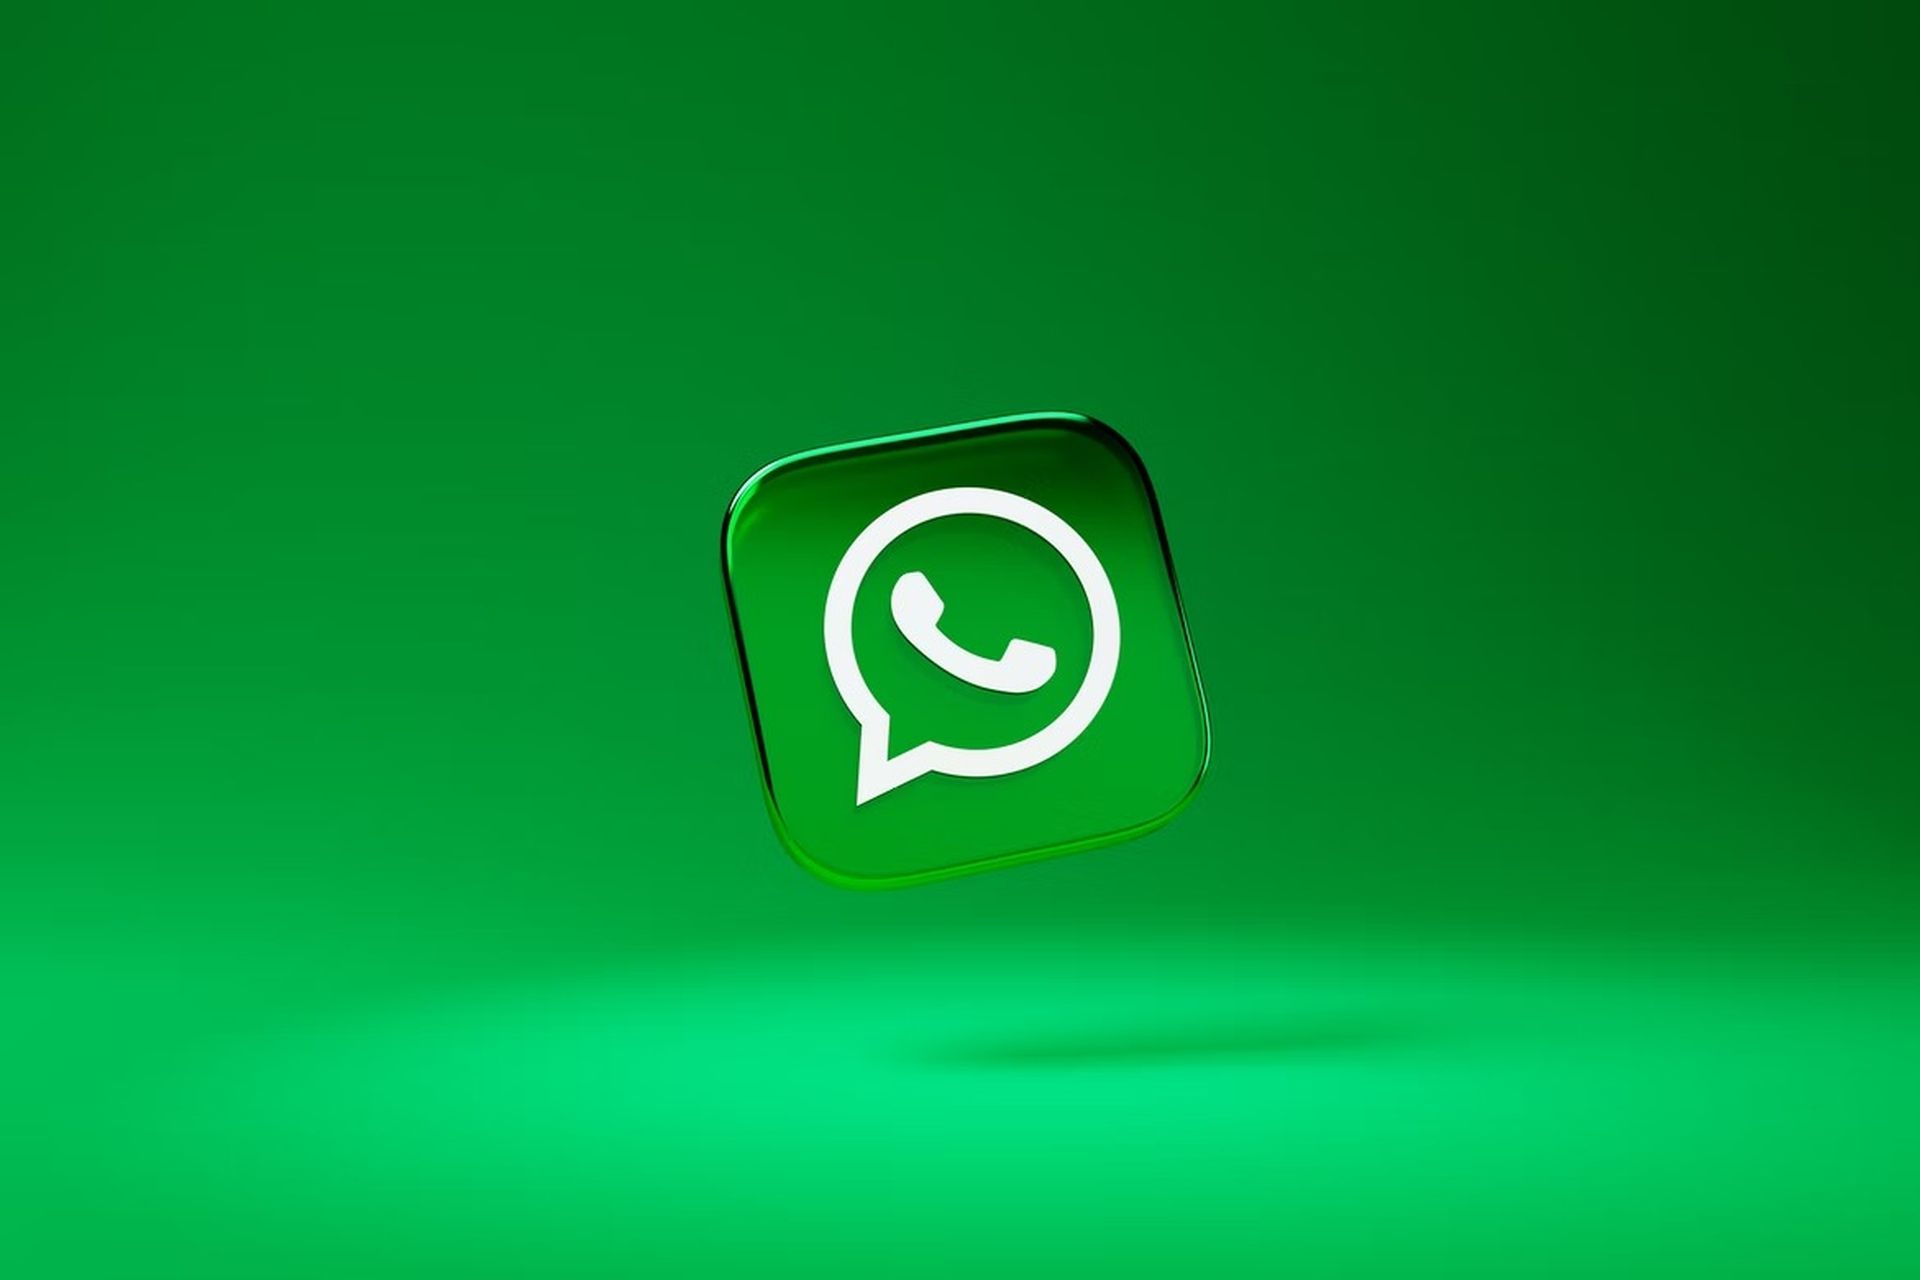 Se você não sabe como enviar uma mensagem do WhatsApp sem salvar o número, nós vamos ajudá-lo.